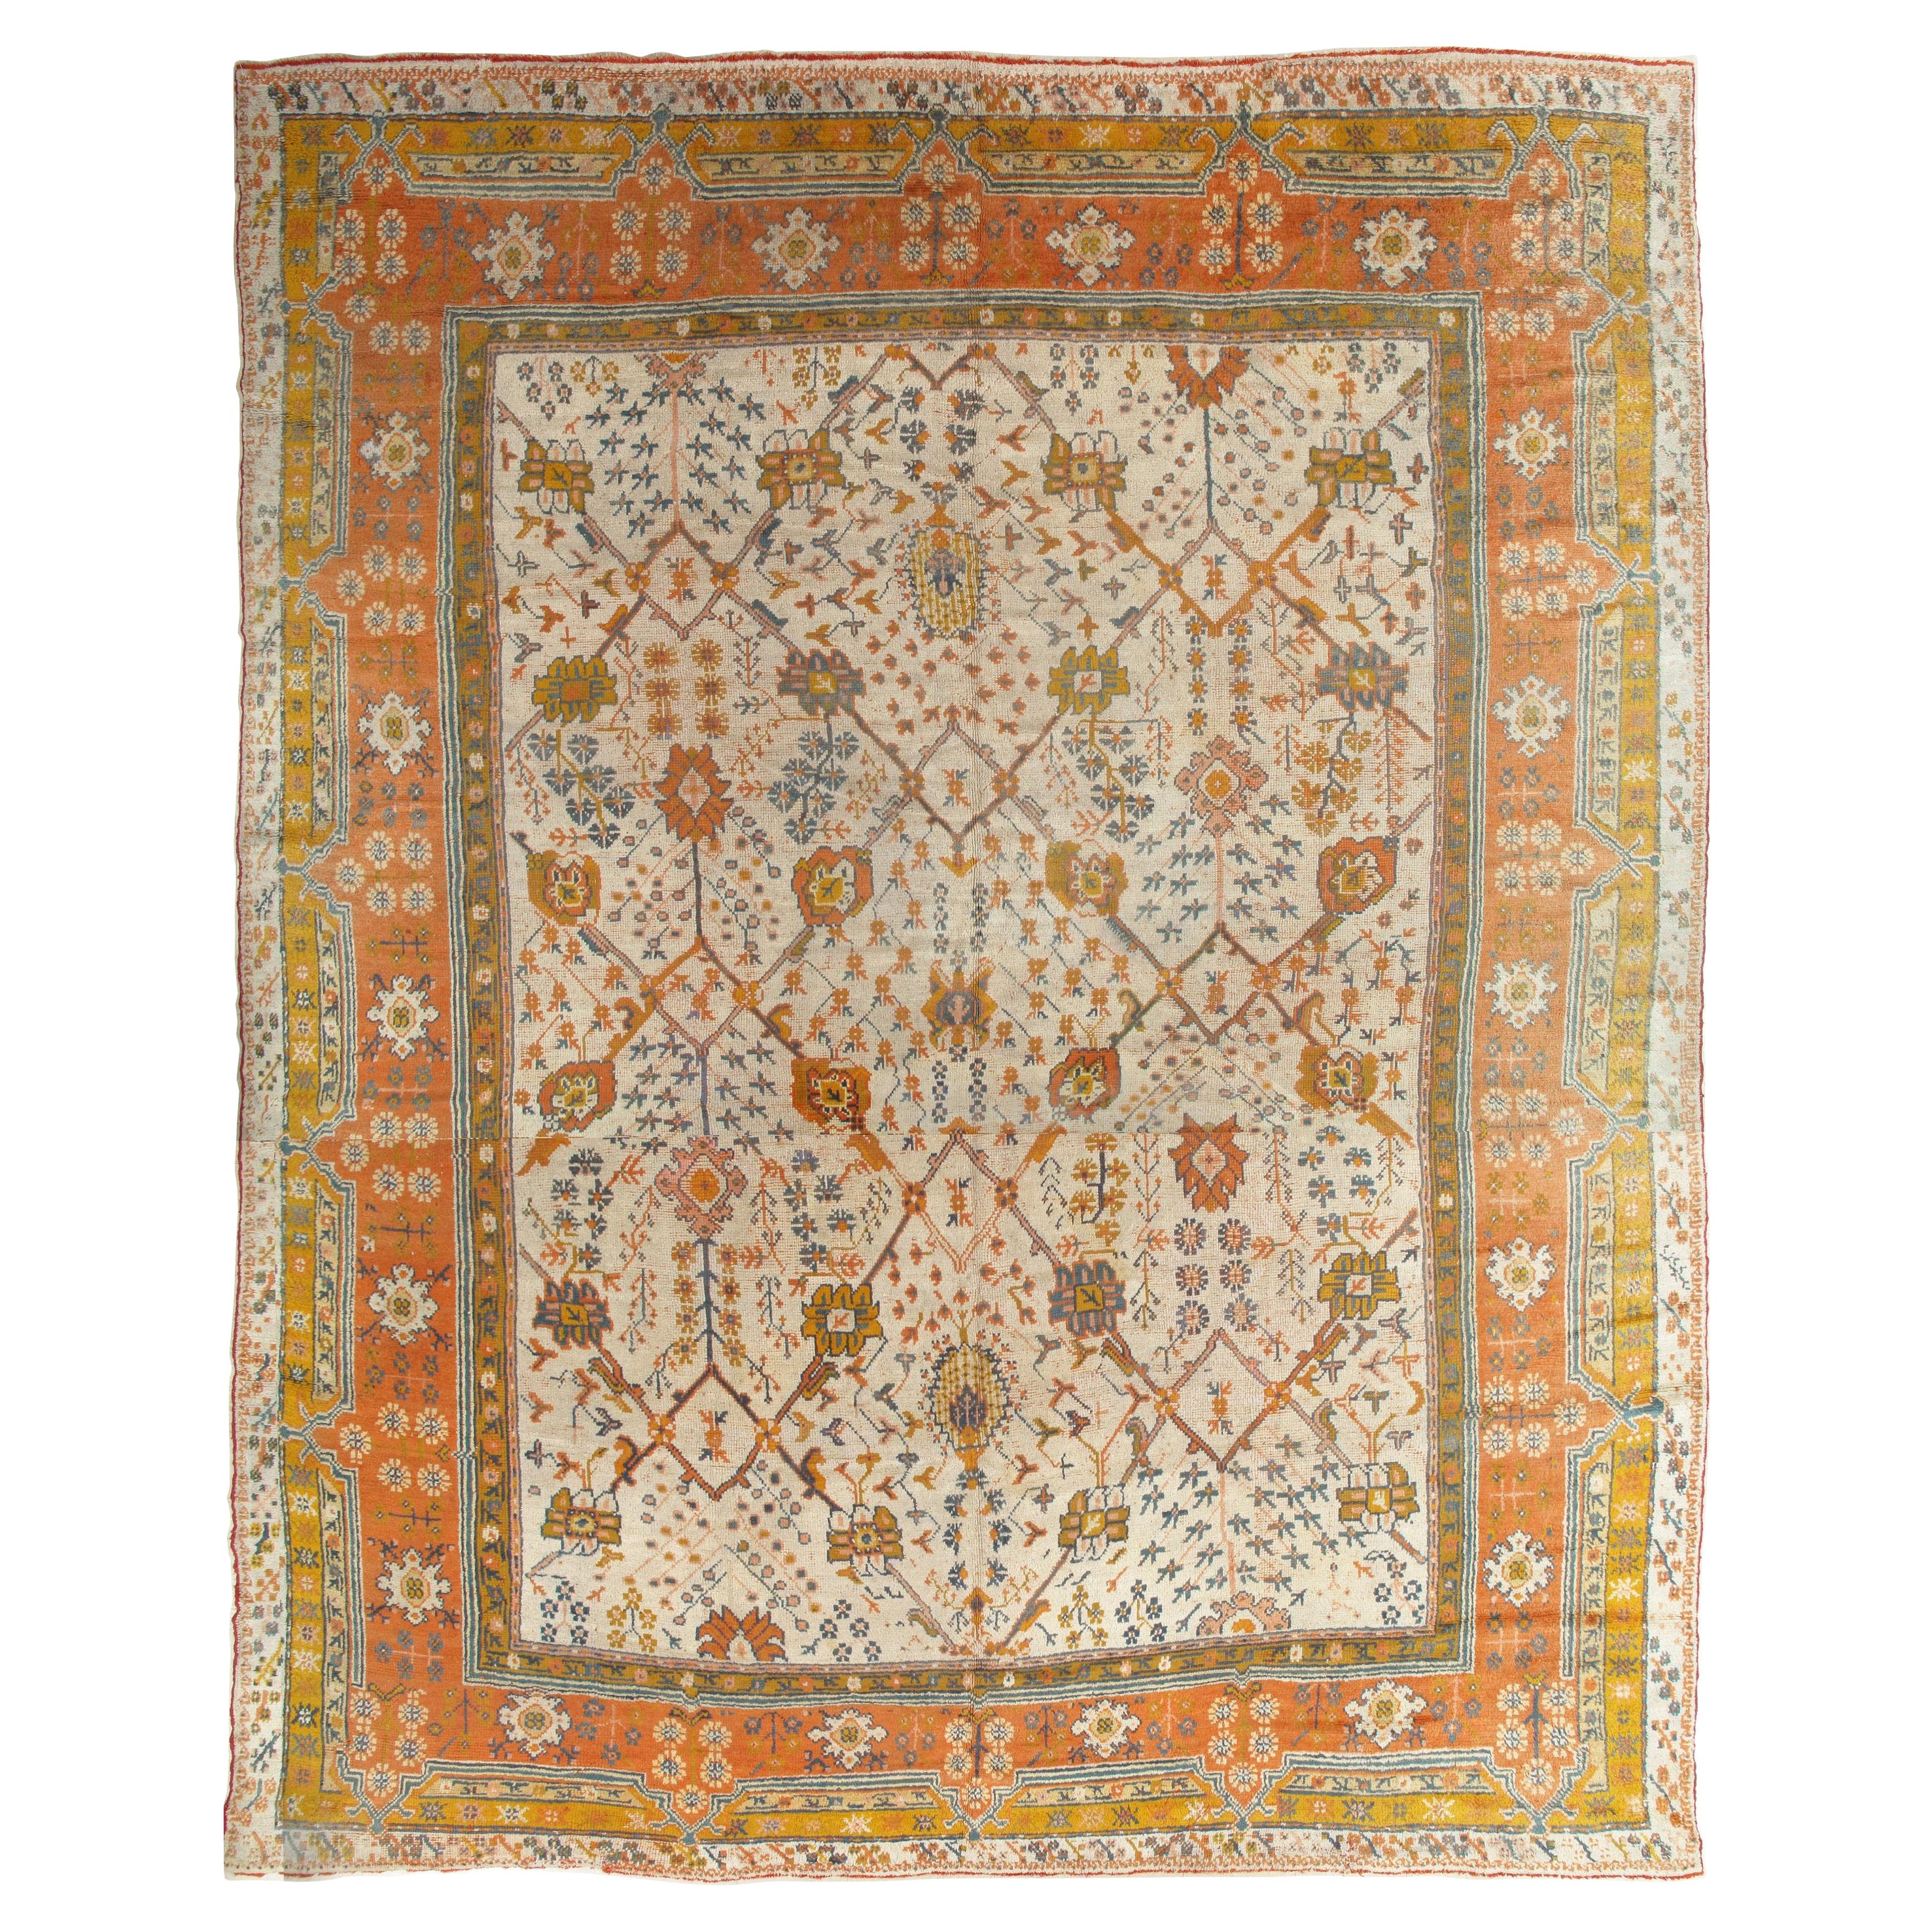 Antiker antiker Oushak-Teppich, Orientteppich, handgefertigt, elfenbeinfarben, orange, safranfarben